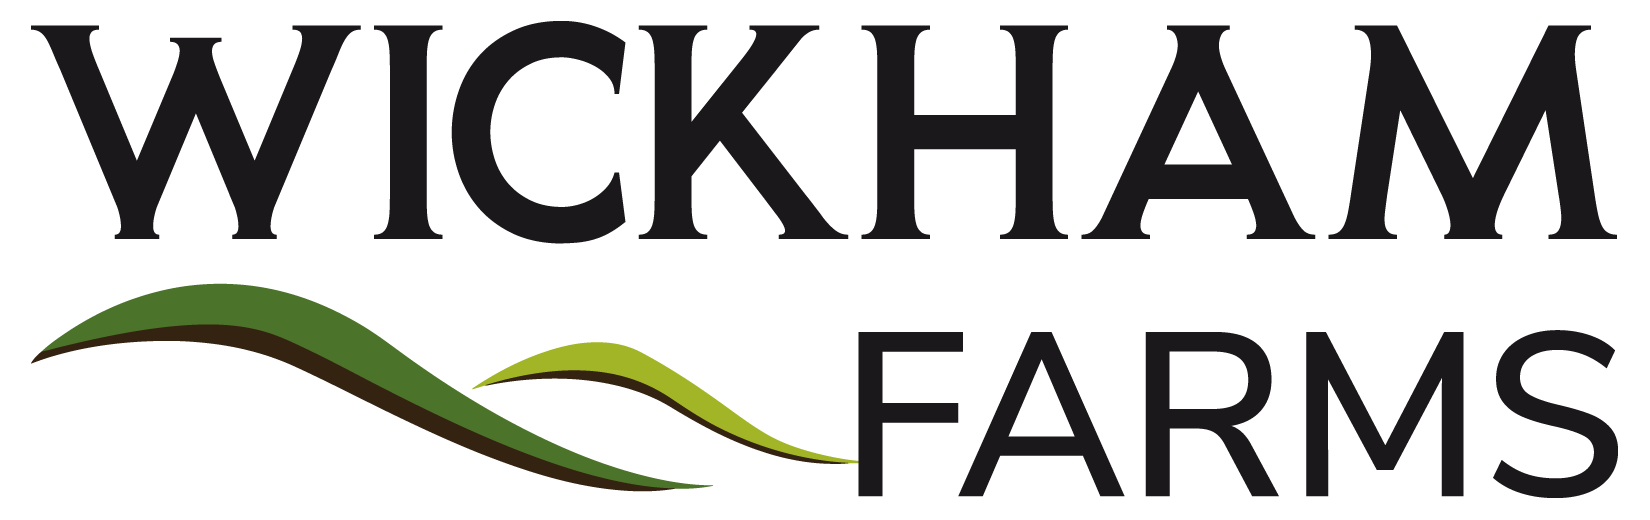 Wickham Farms logo